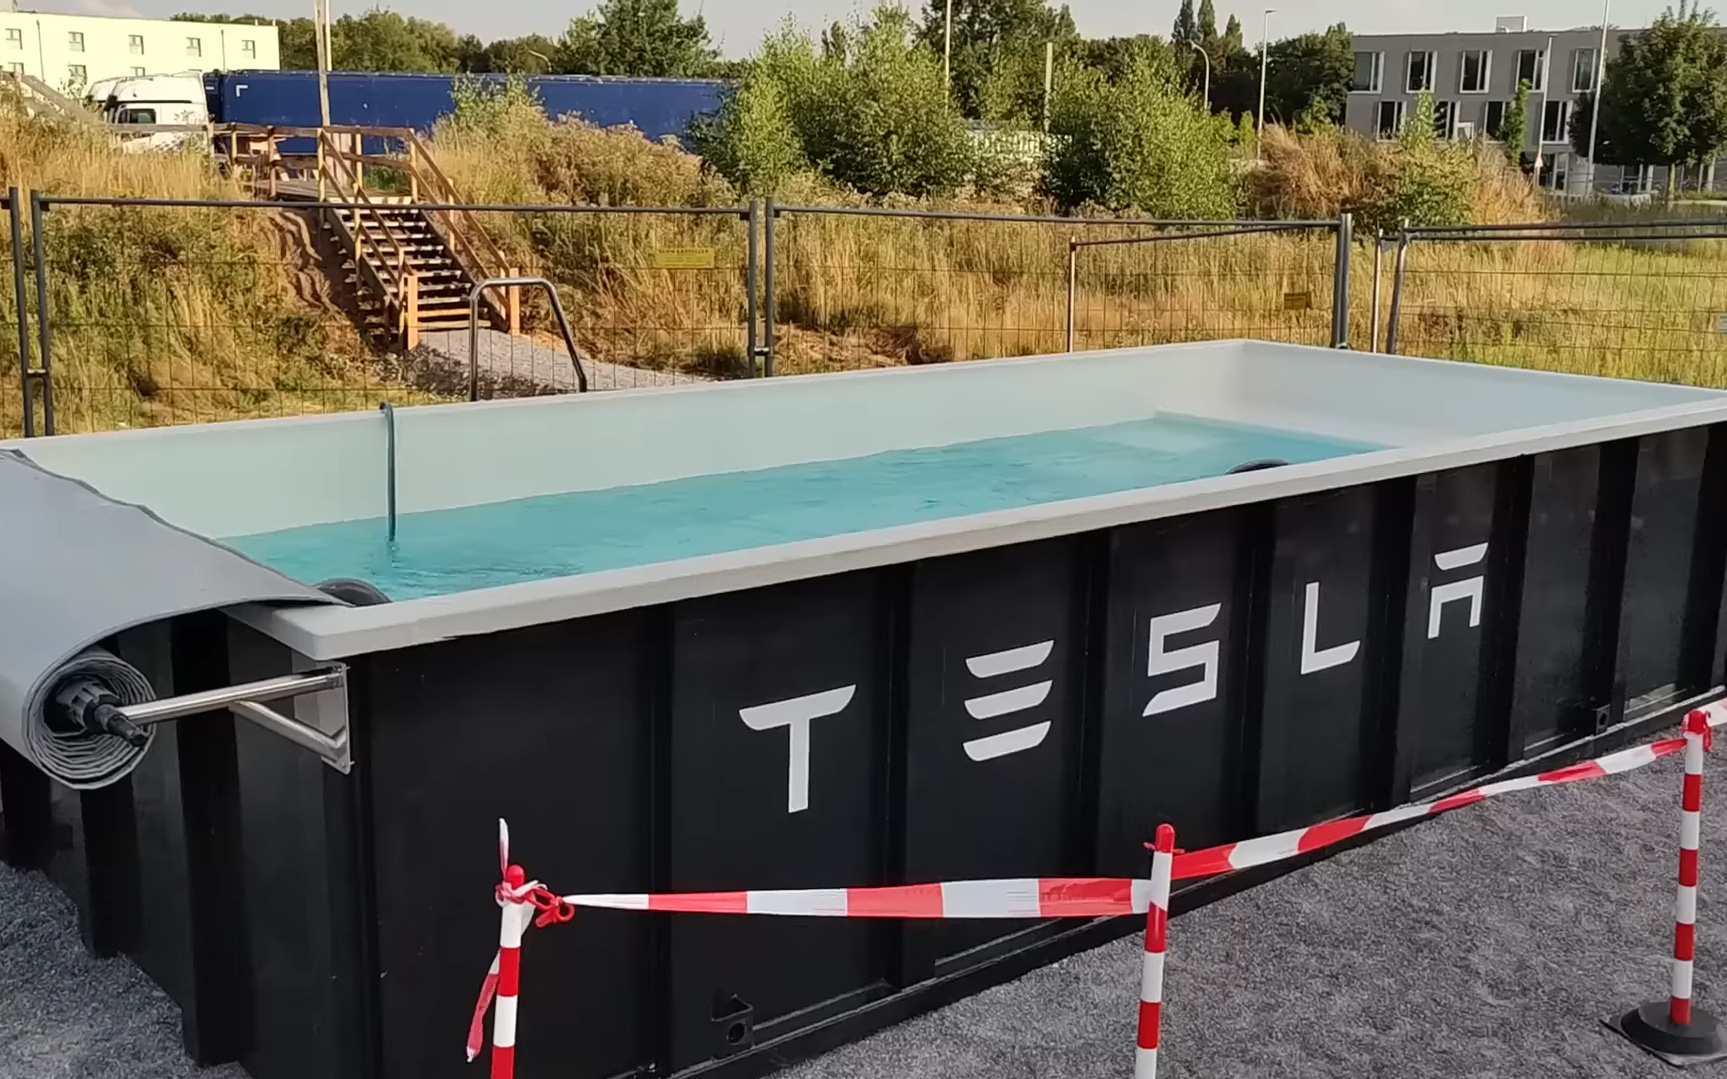 Tesla làm bể bơi từ thùng rác cho người chờ sạc có thể tắm miễn phí